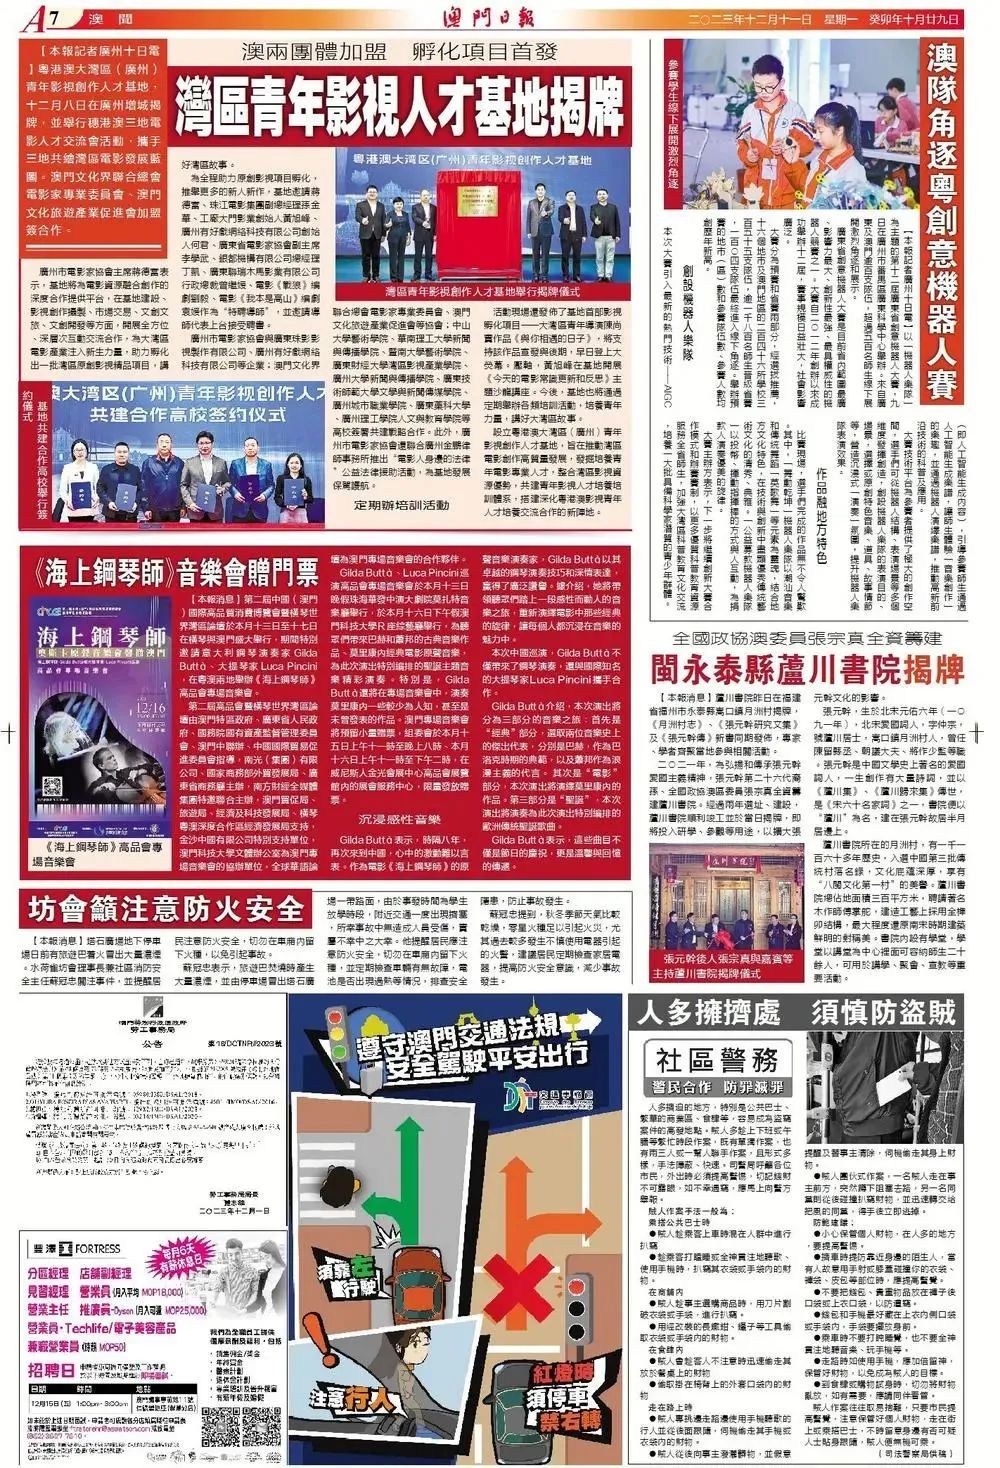 永泰月洲村蘆川書院揭牌新聞報道閱讀量二天超過二百萬